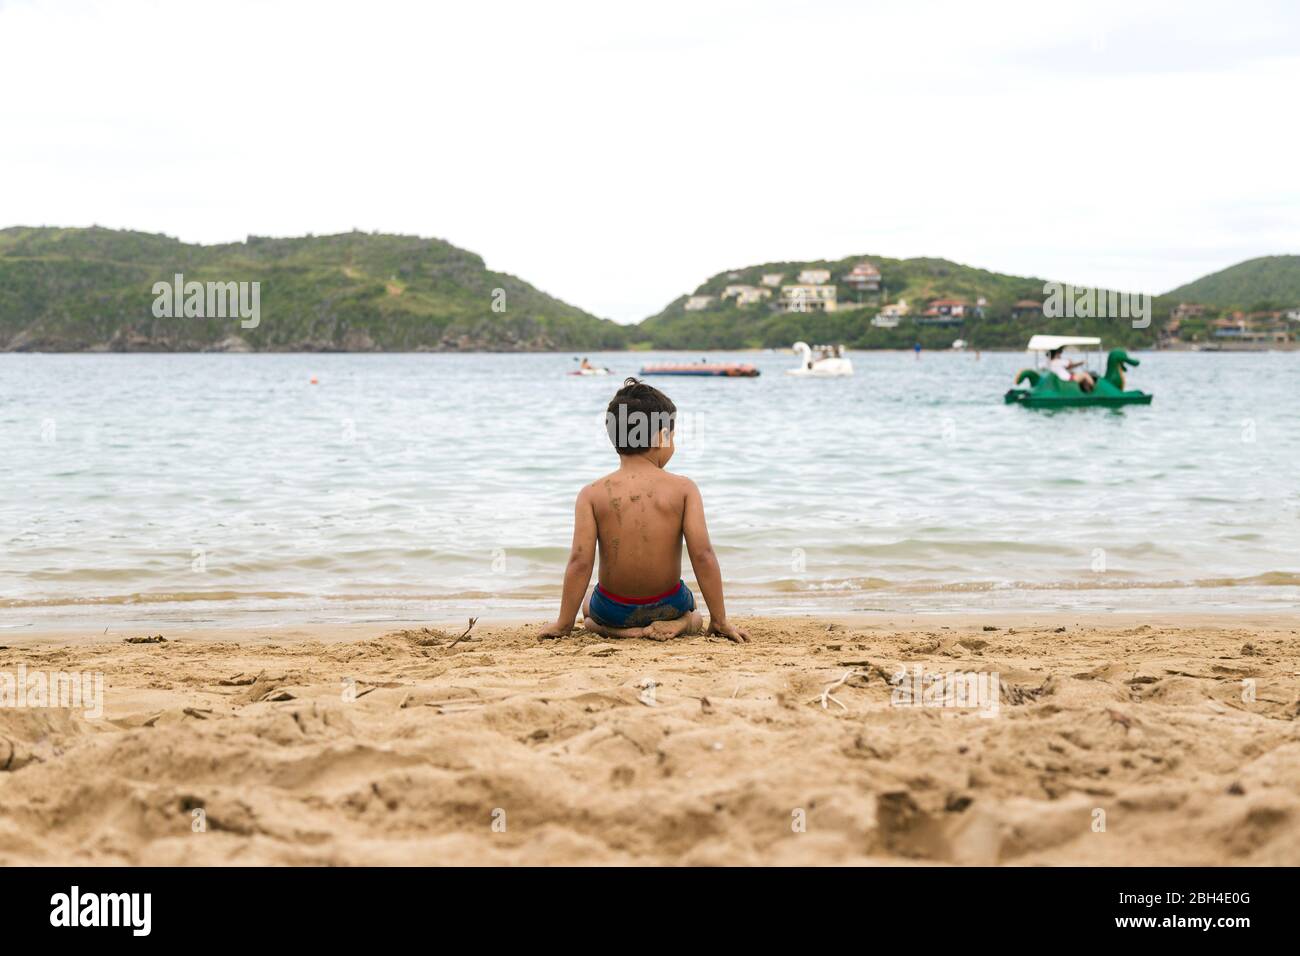 Ein einsamer brasilianischer Junge, der auf dem Sand am Strand Brasiliens sitzt. Blick auf seinen Rücken. Strand Von Ferradura, Buzios. Stockfoto